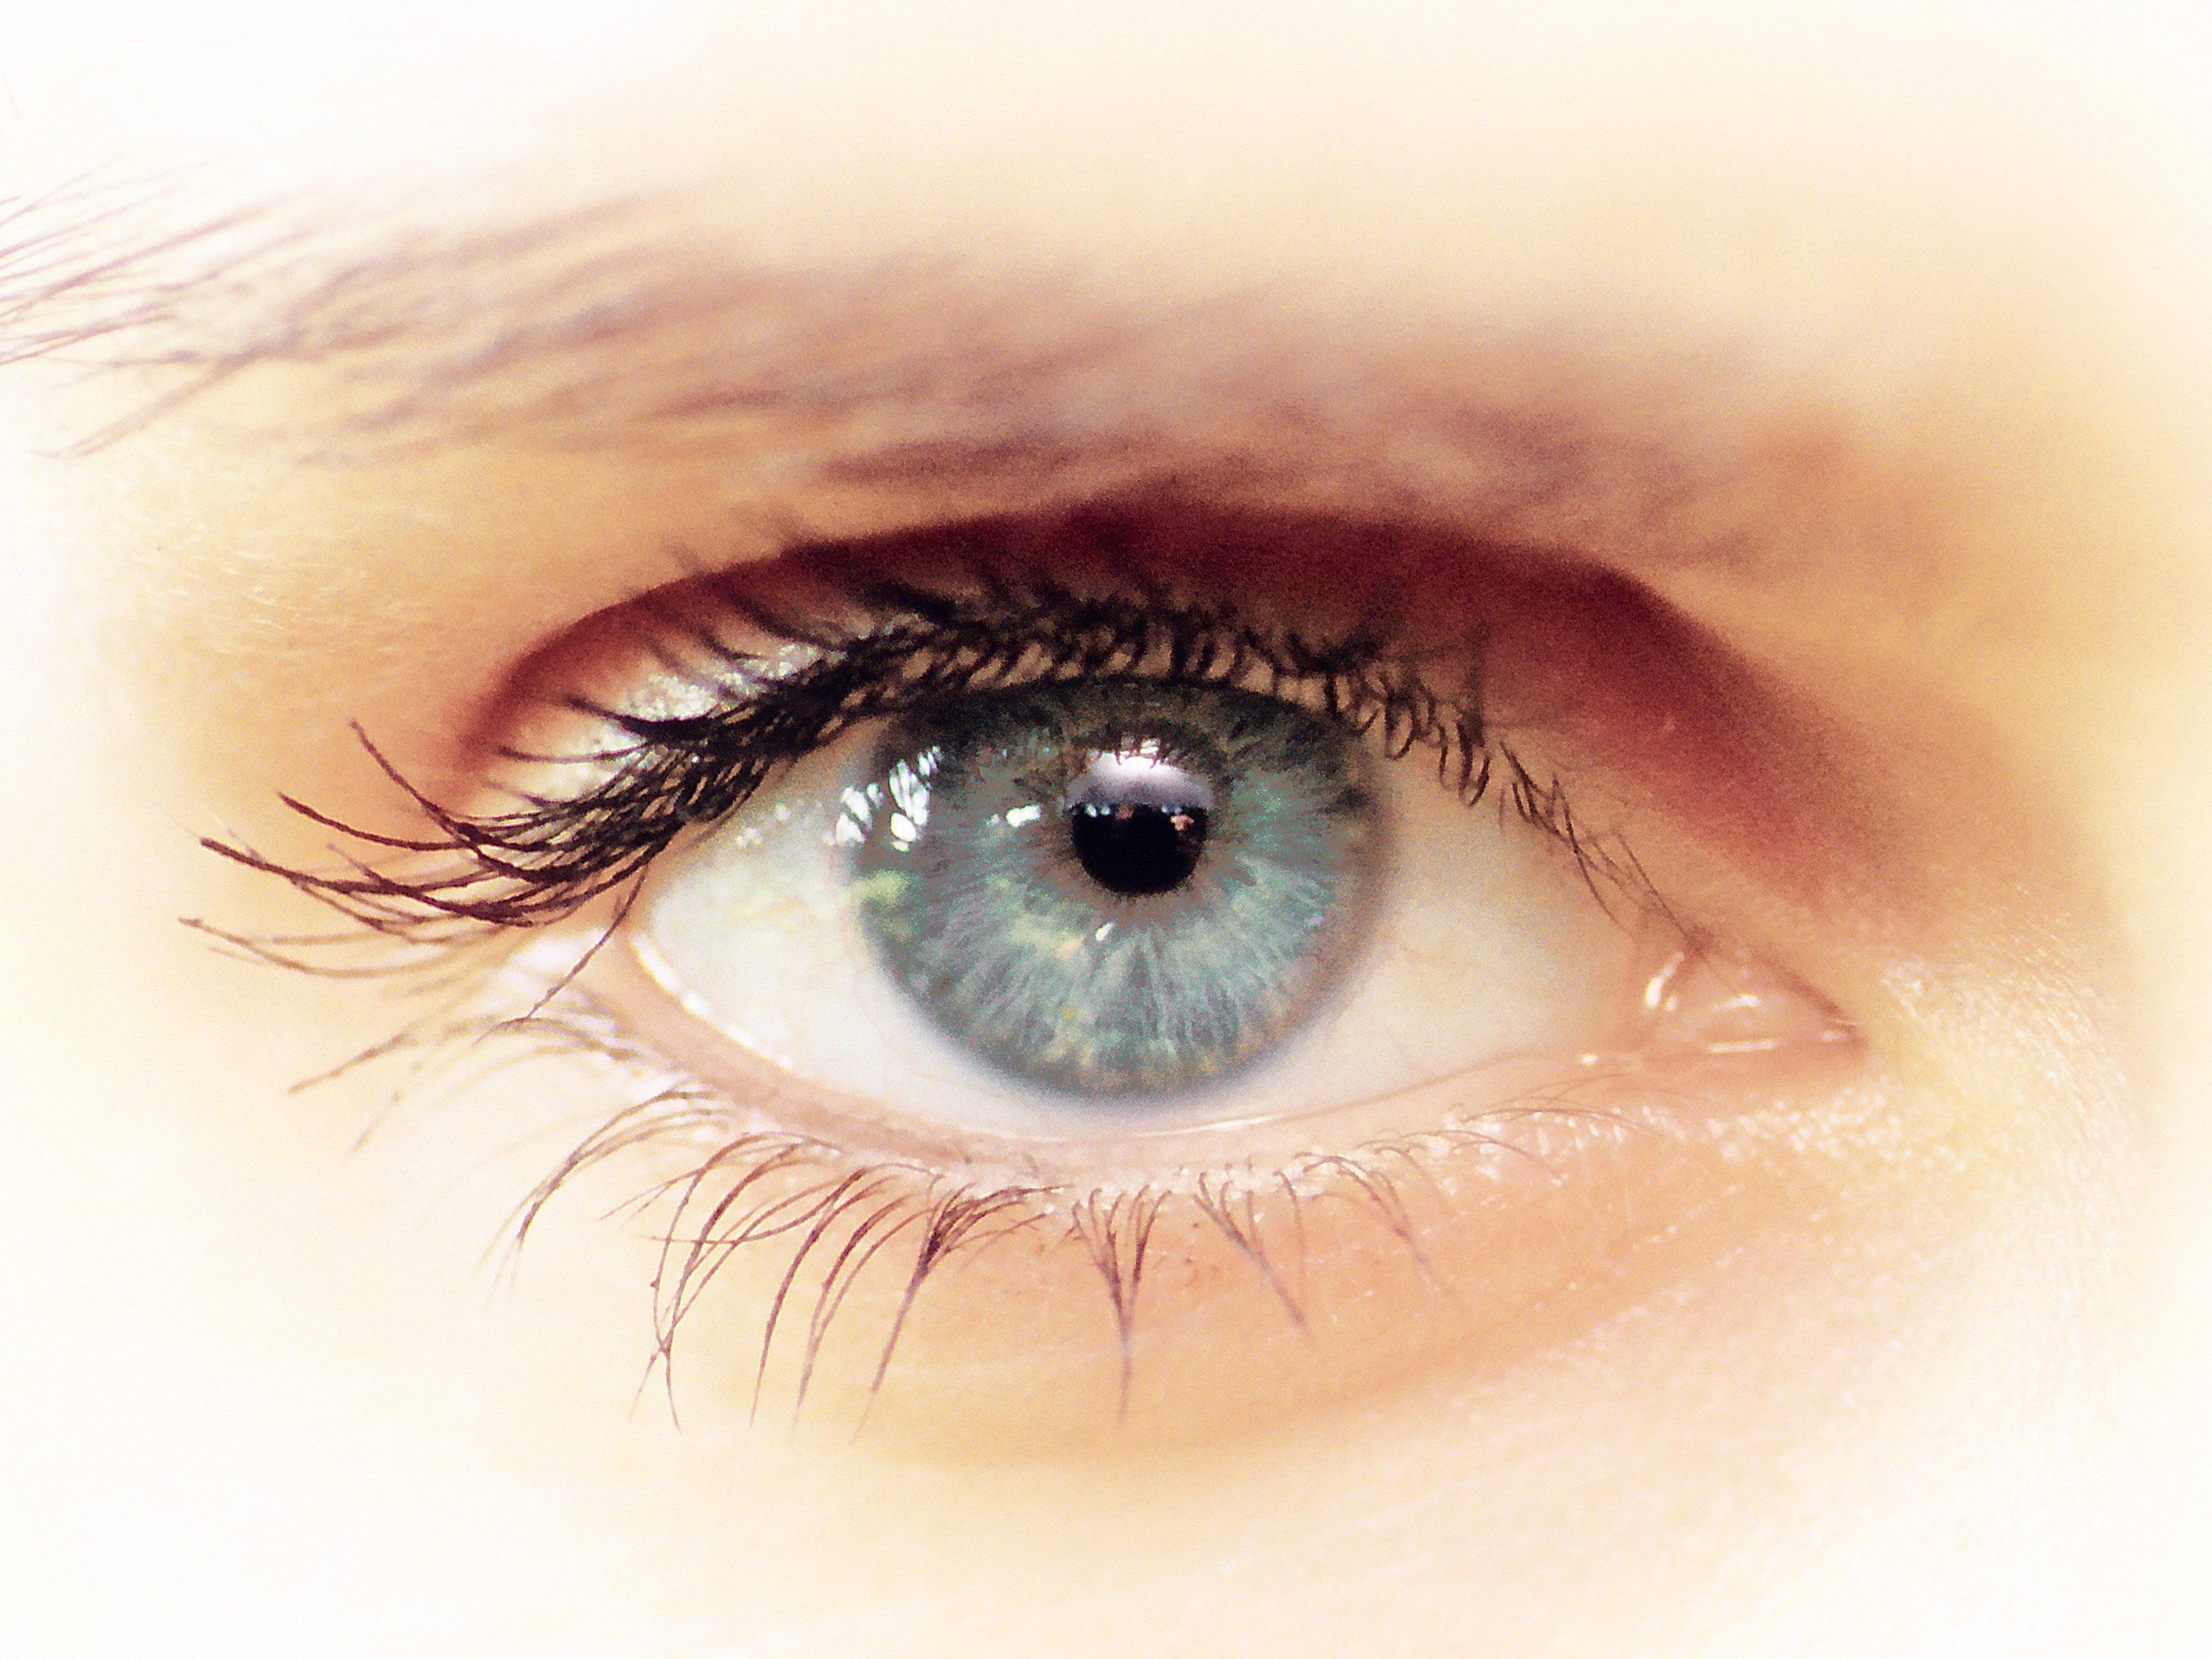 Menschen mit blauen Augen werden offenbar als attraktiver und intelligenter angesehen.